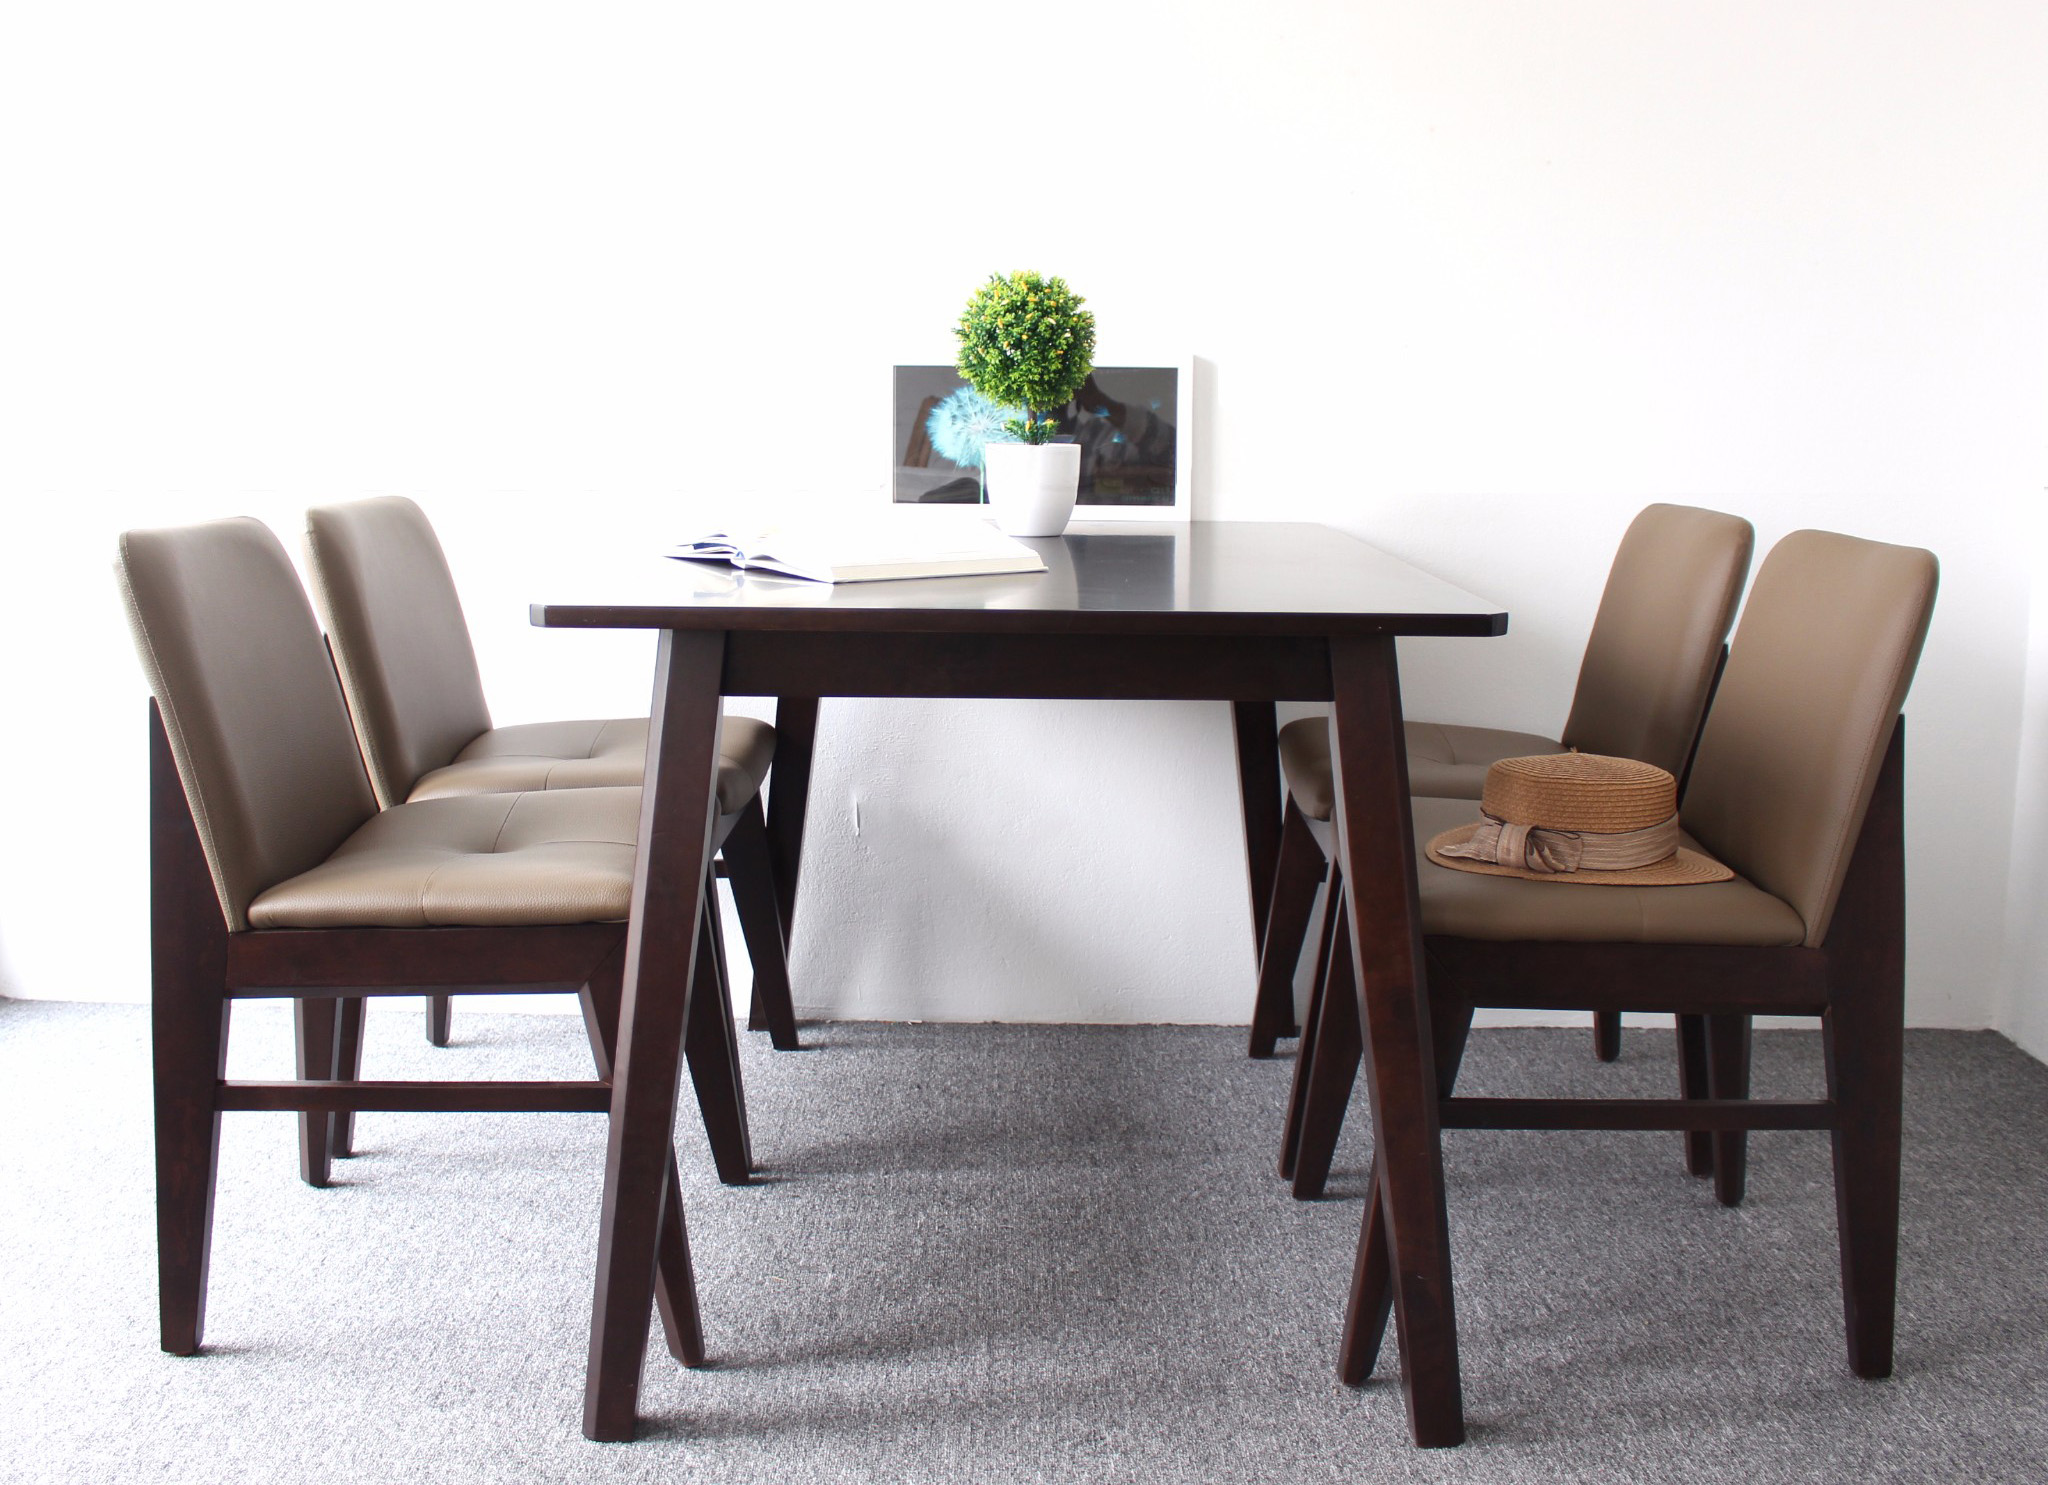 Bộ bàn ghế ăn chất lượng, đảm bảo tính thẩm mỹ với mức chi phí hợp lý nhất Ghe-kudo-7-2